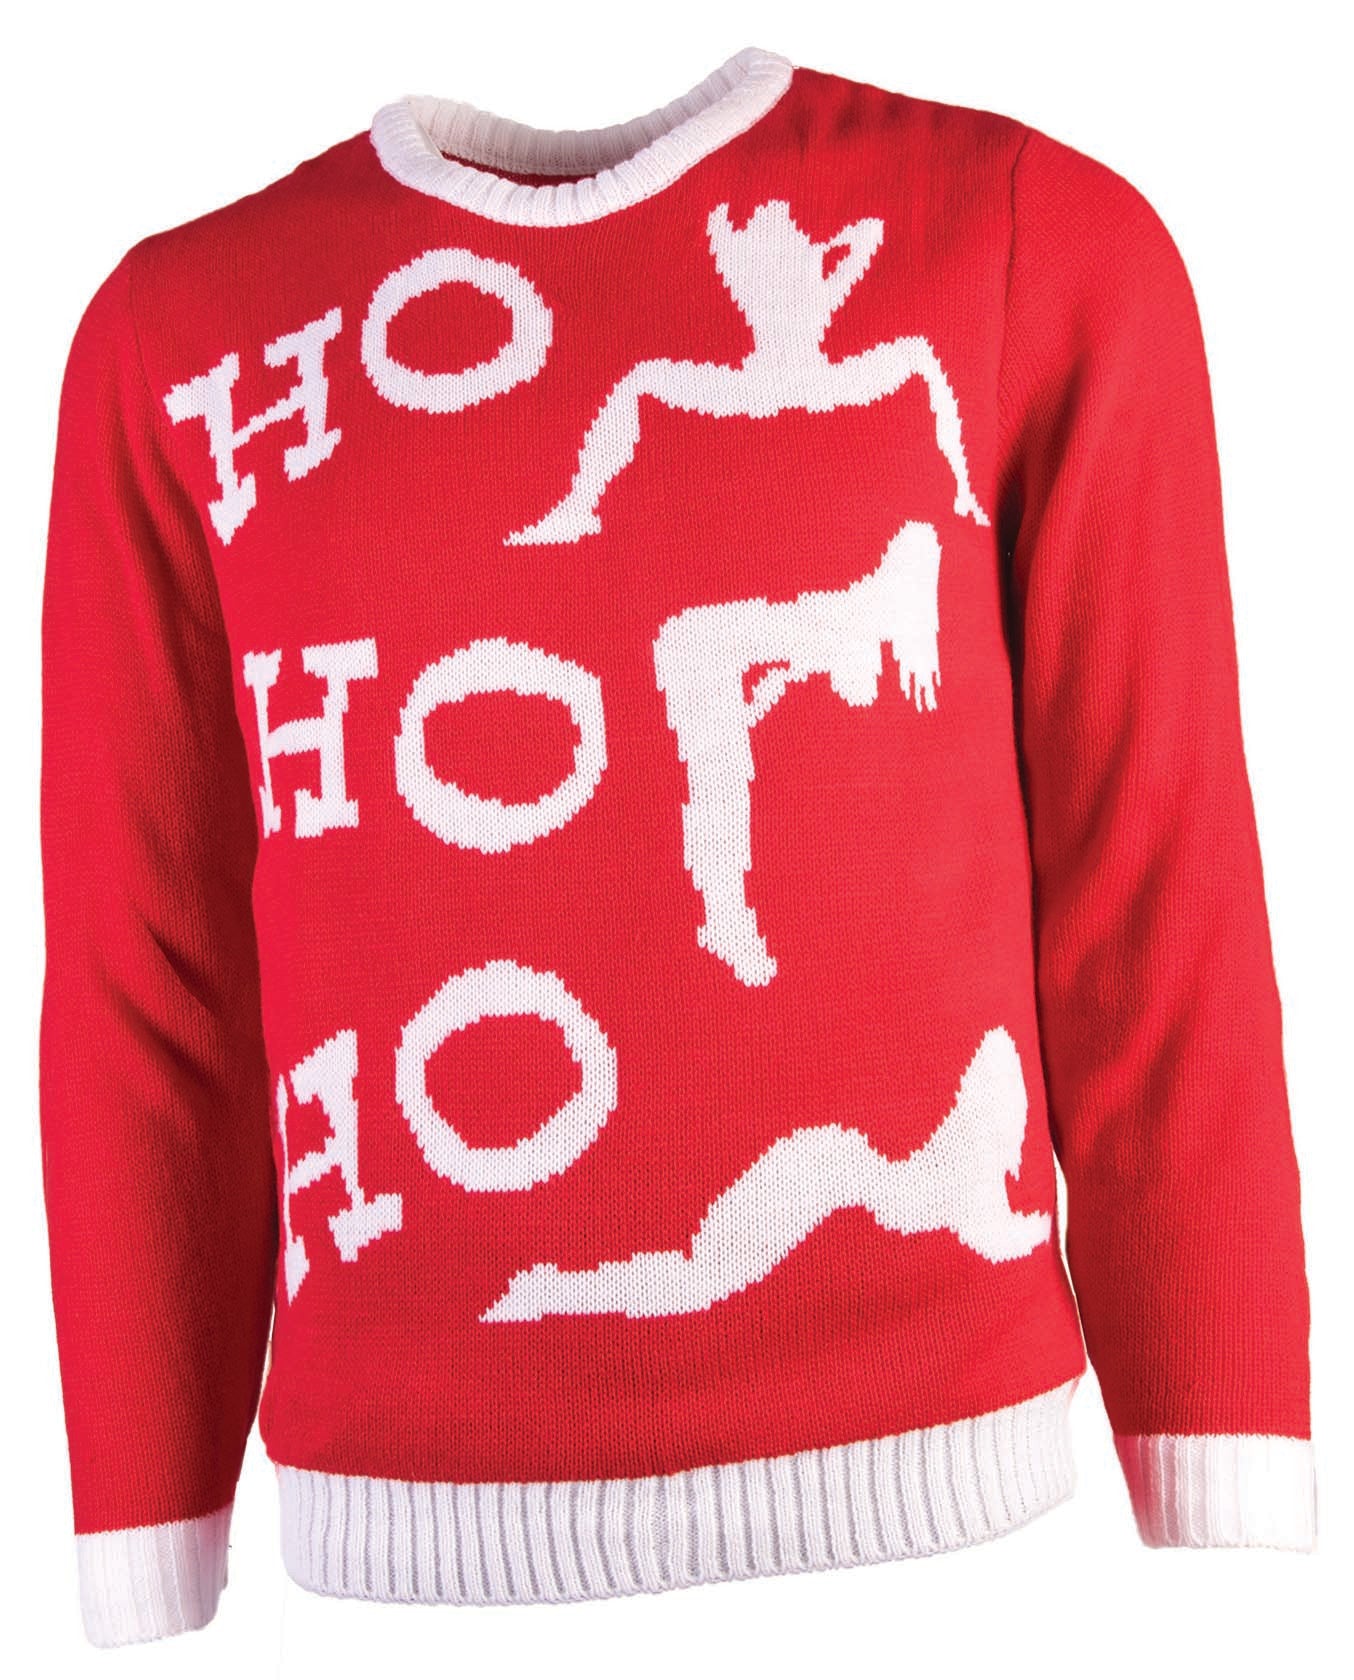 Sweater: HO HO HO